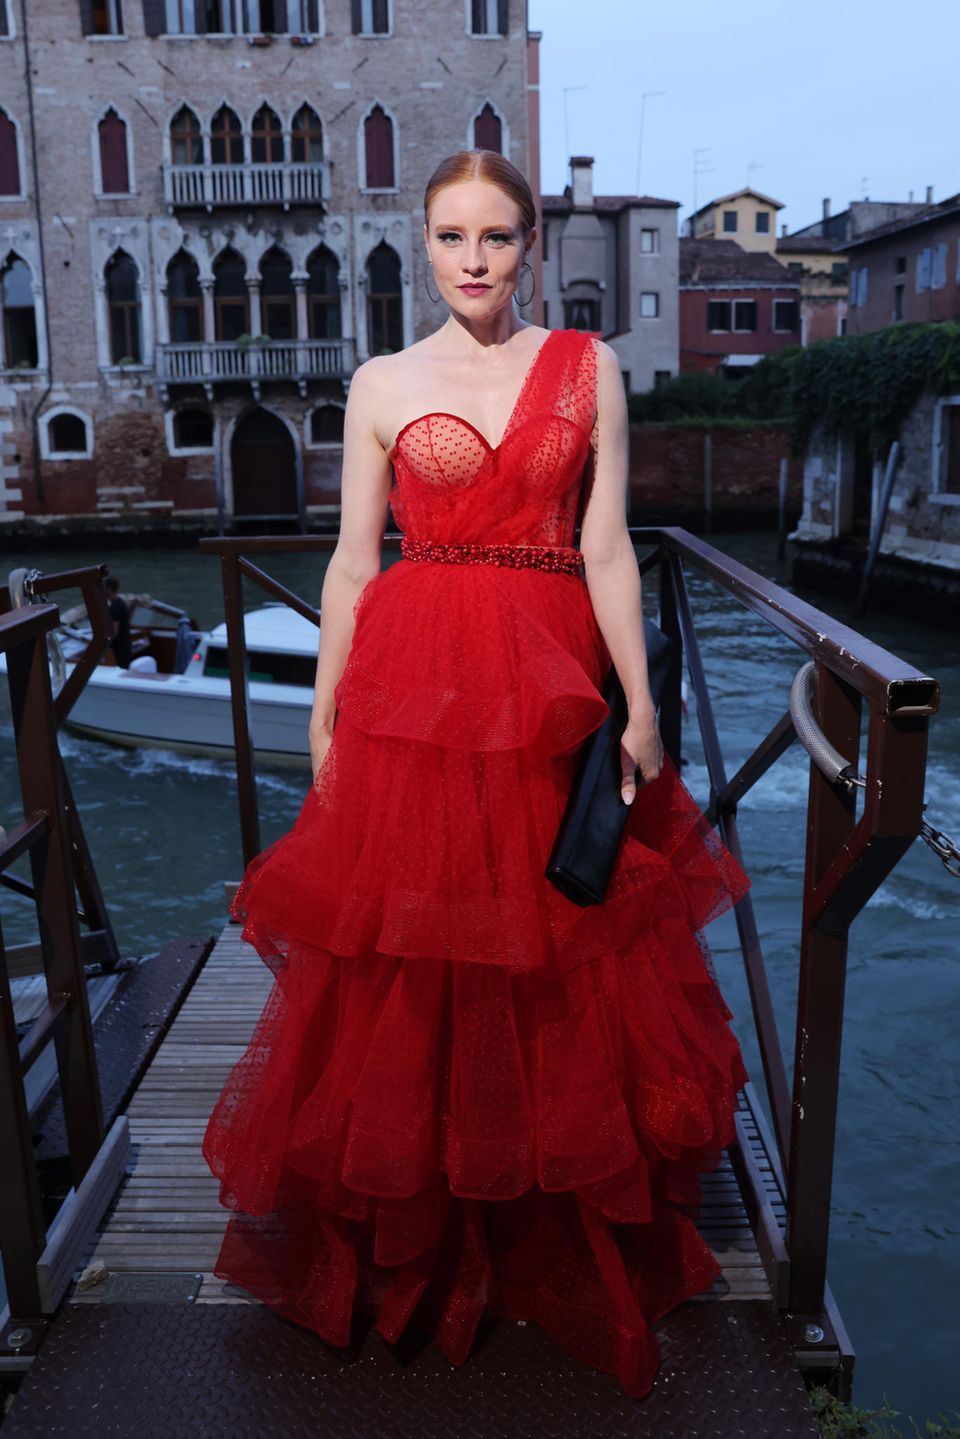 Was für ein Look! Barbara Meier besucht die amfAR Gala in Venedig. Vor dem großen Red-Carpet-Event posiert das Model in einem dramatischen Tüllkleid in knalligem Rot vor der traumhaften Kulisse der Lagunenstadt und sorgt für einen echten Wow-Auftritt!